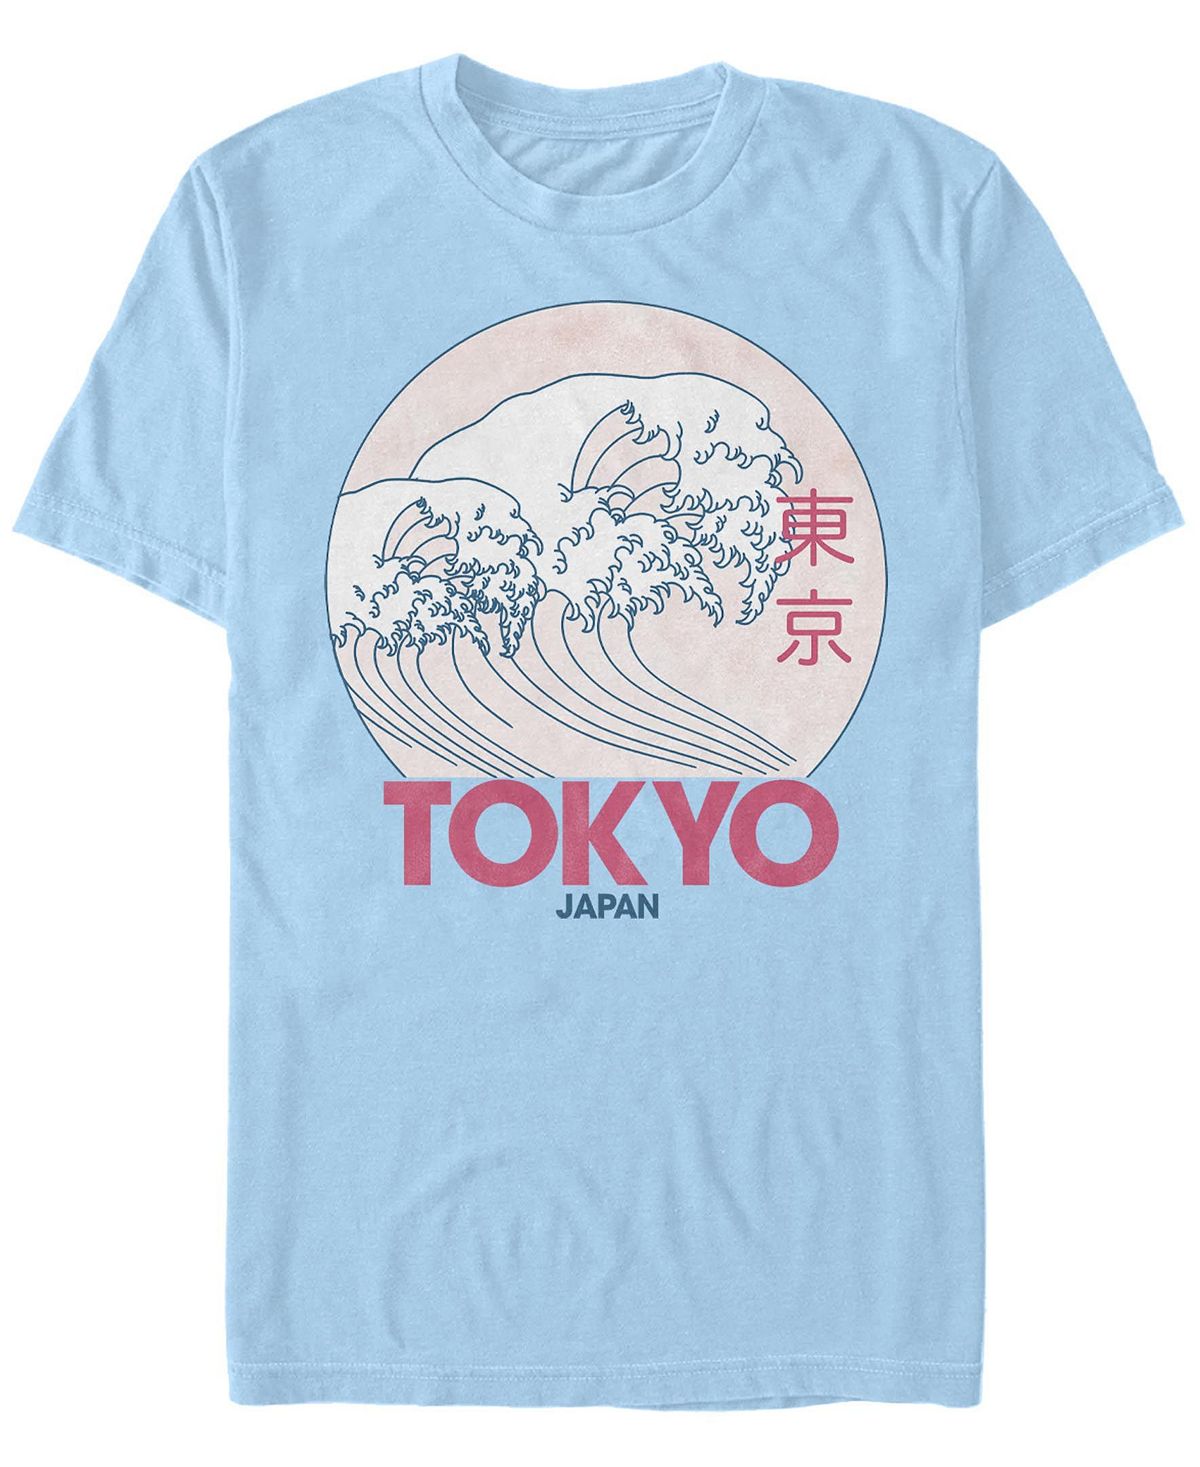 Мужская футболка с круглым вырезом с короткими рукавами в винтажном стиле tokyo Fifth Sun, светло-синий мужская футболка с круглым вырезом winnie в винтажном стиле с короткими рукавами fifth sun тан бежевый